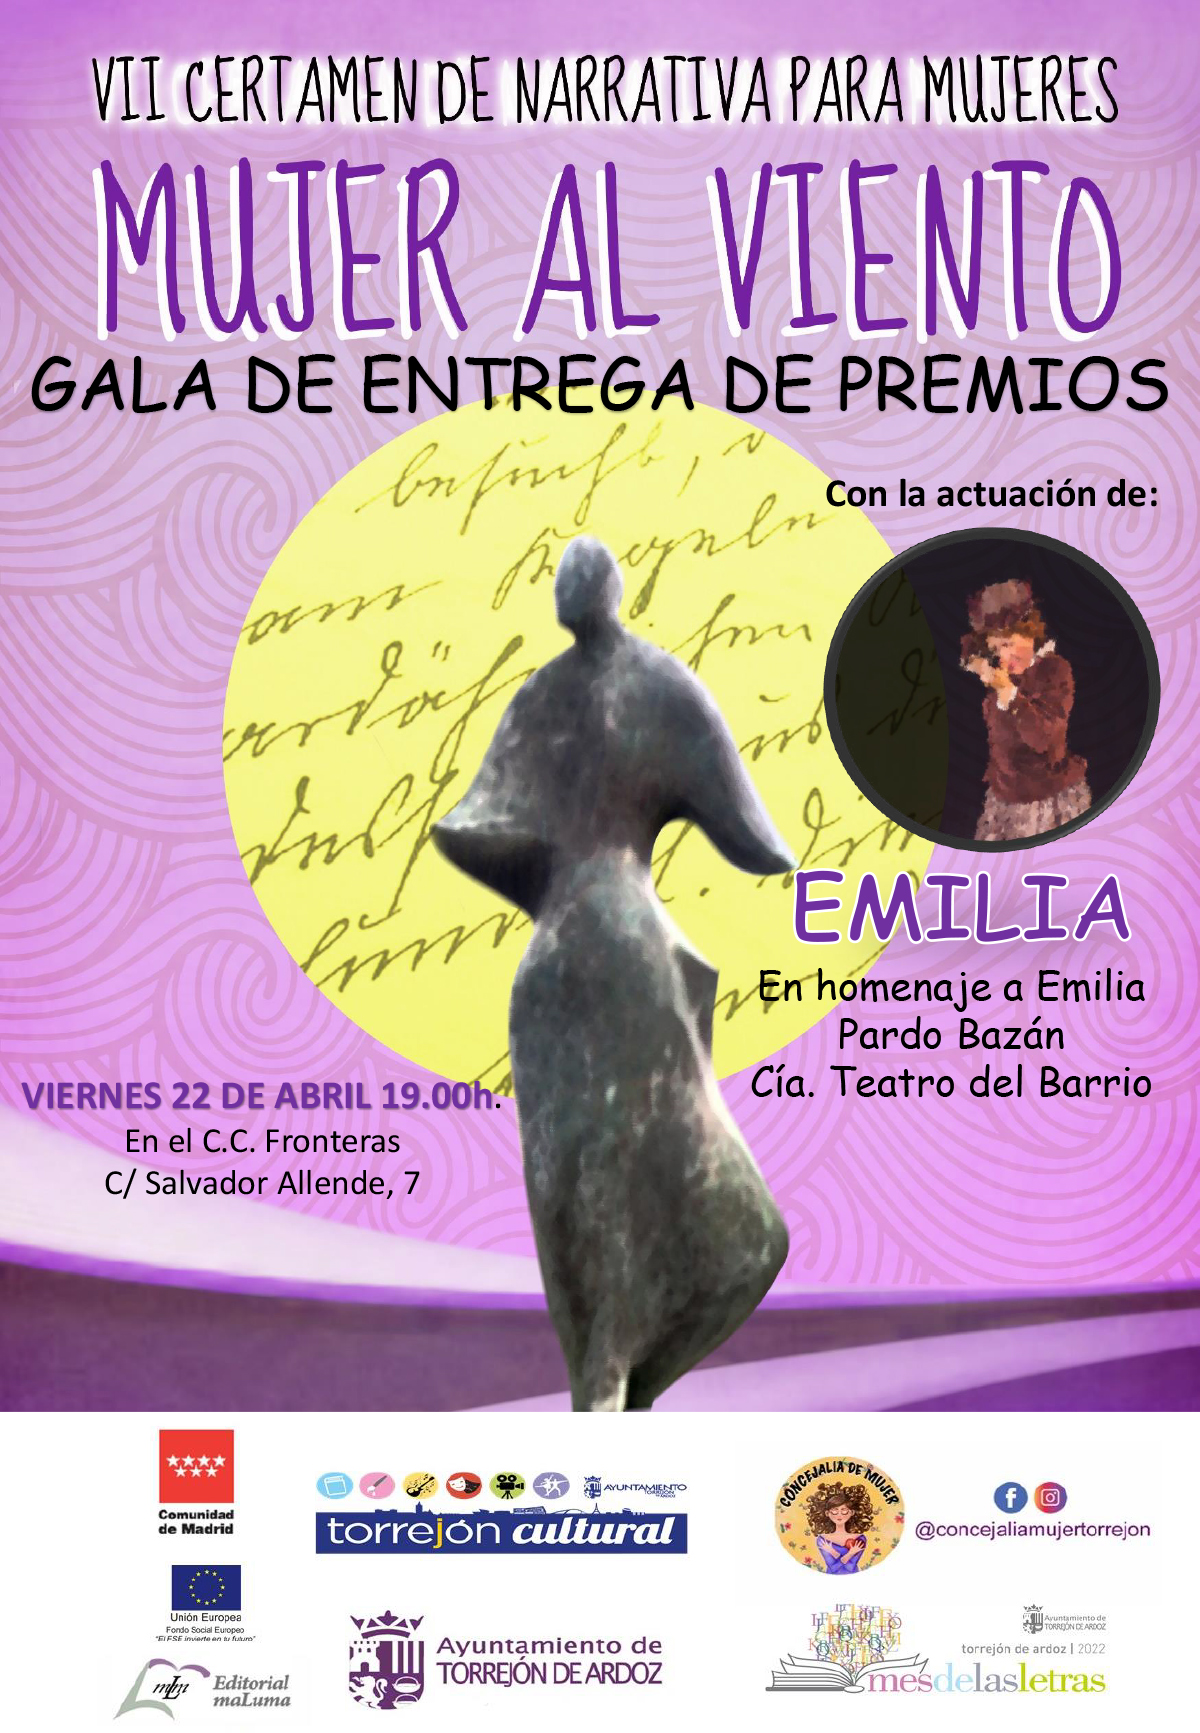 Gala de entrega de premios VII Certamen de Narrativa "Mujer al viento"